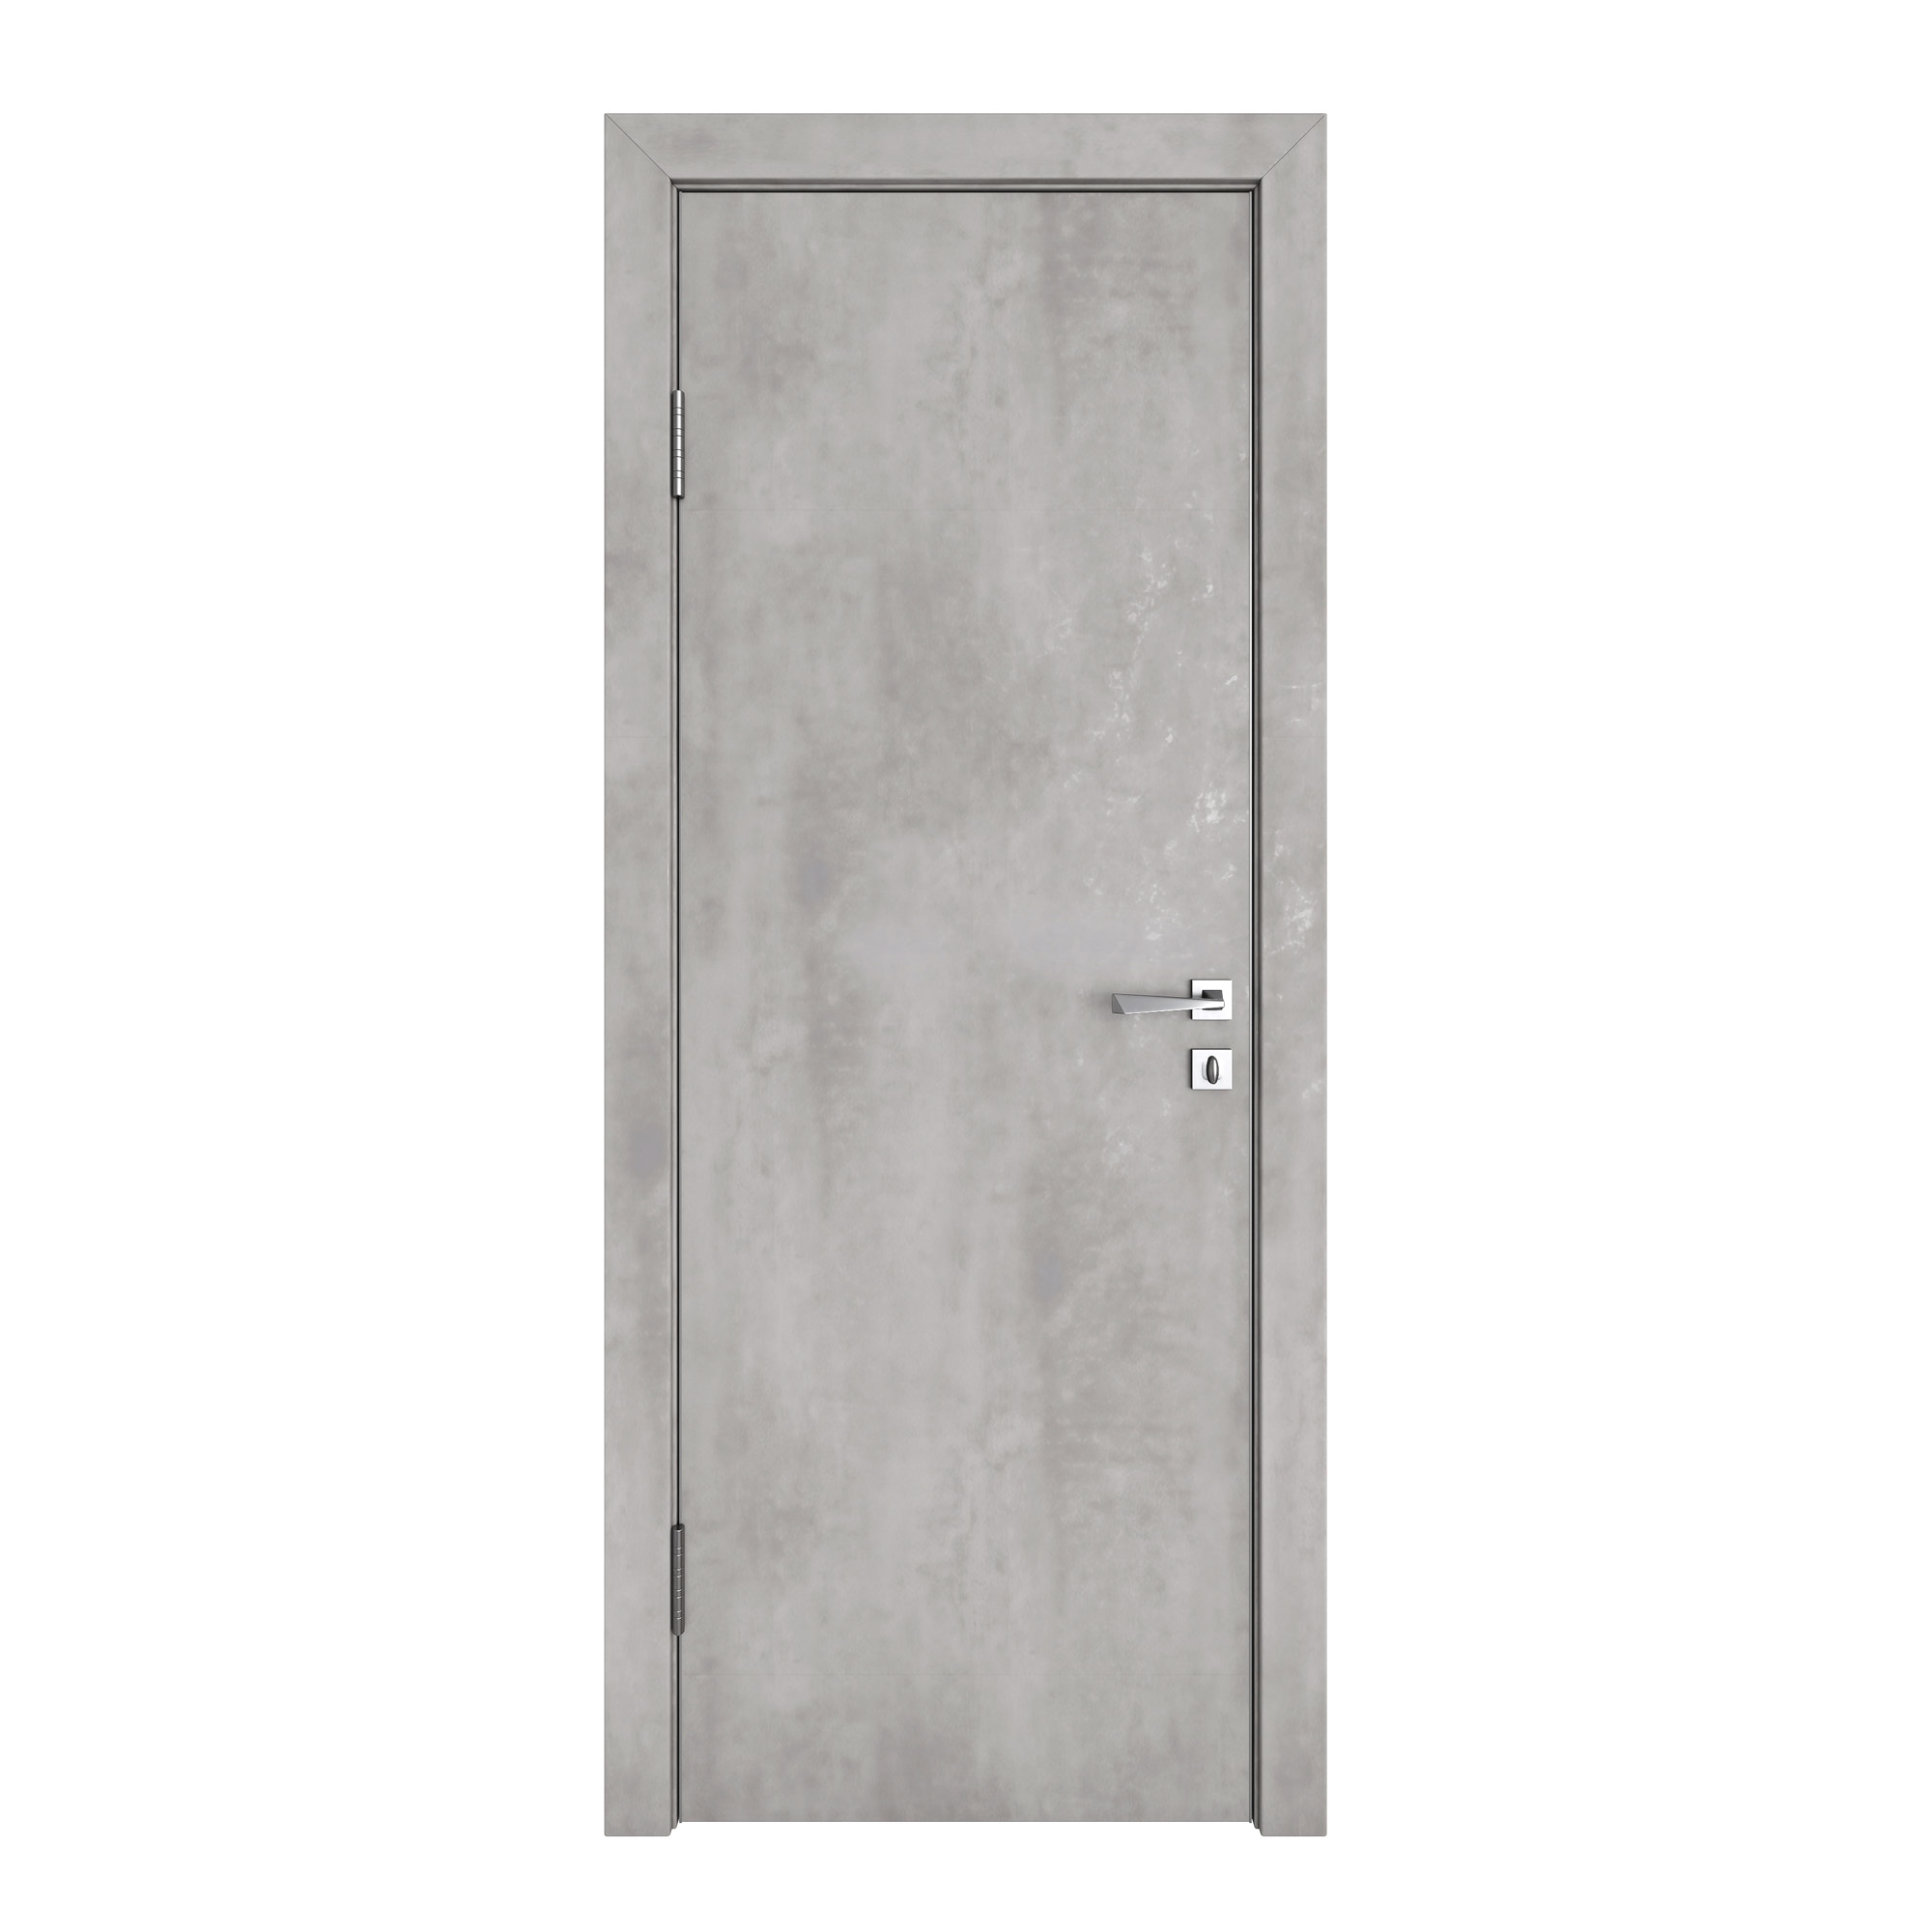 фото Межкомнатная дверь дг-500/2 бетон светлый 200х70 дверная линия